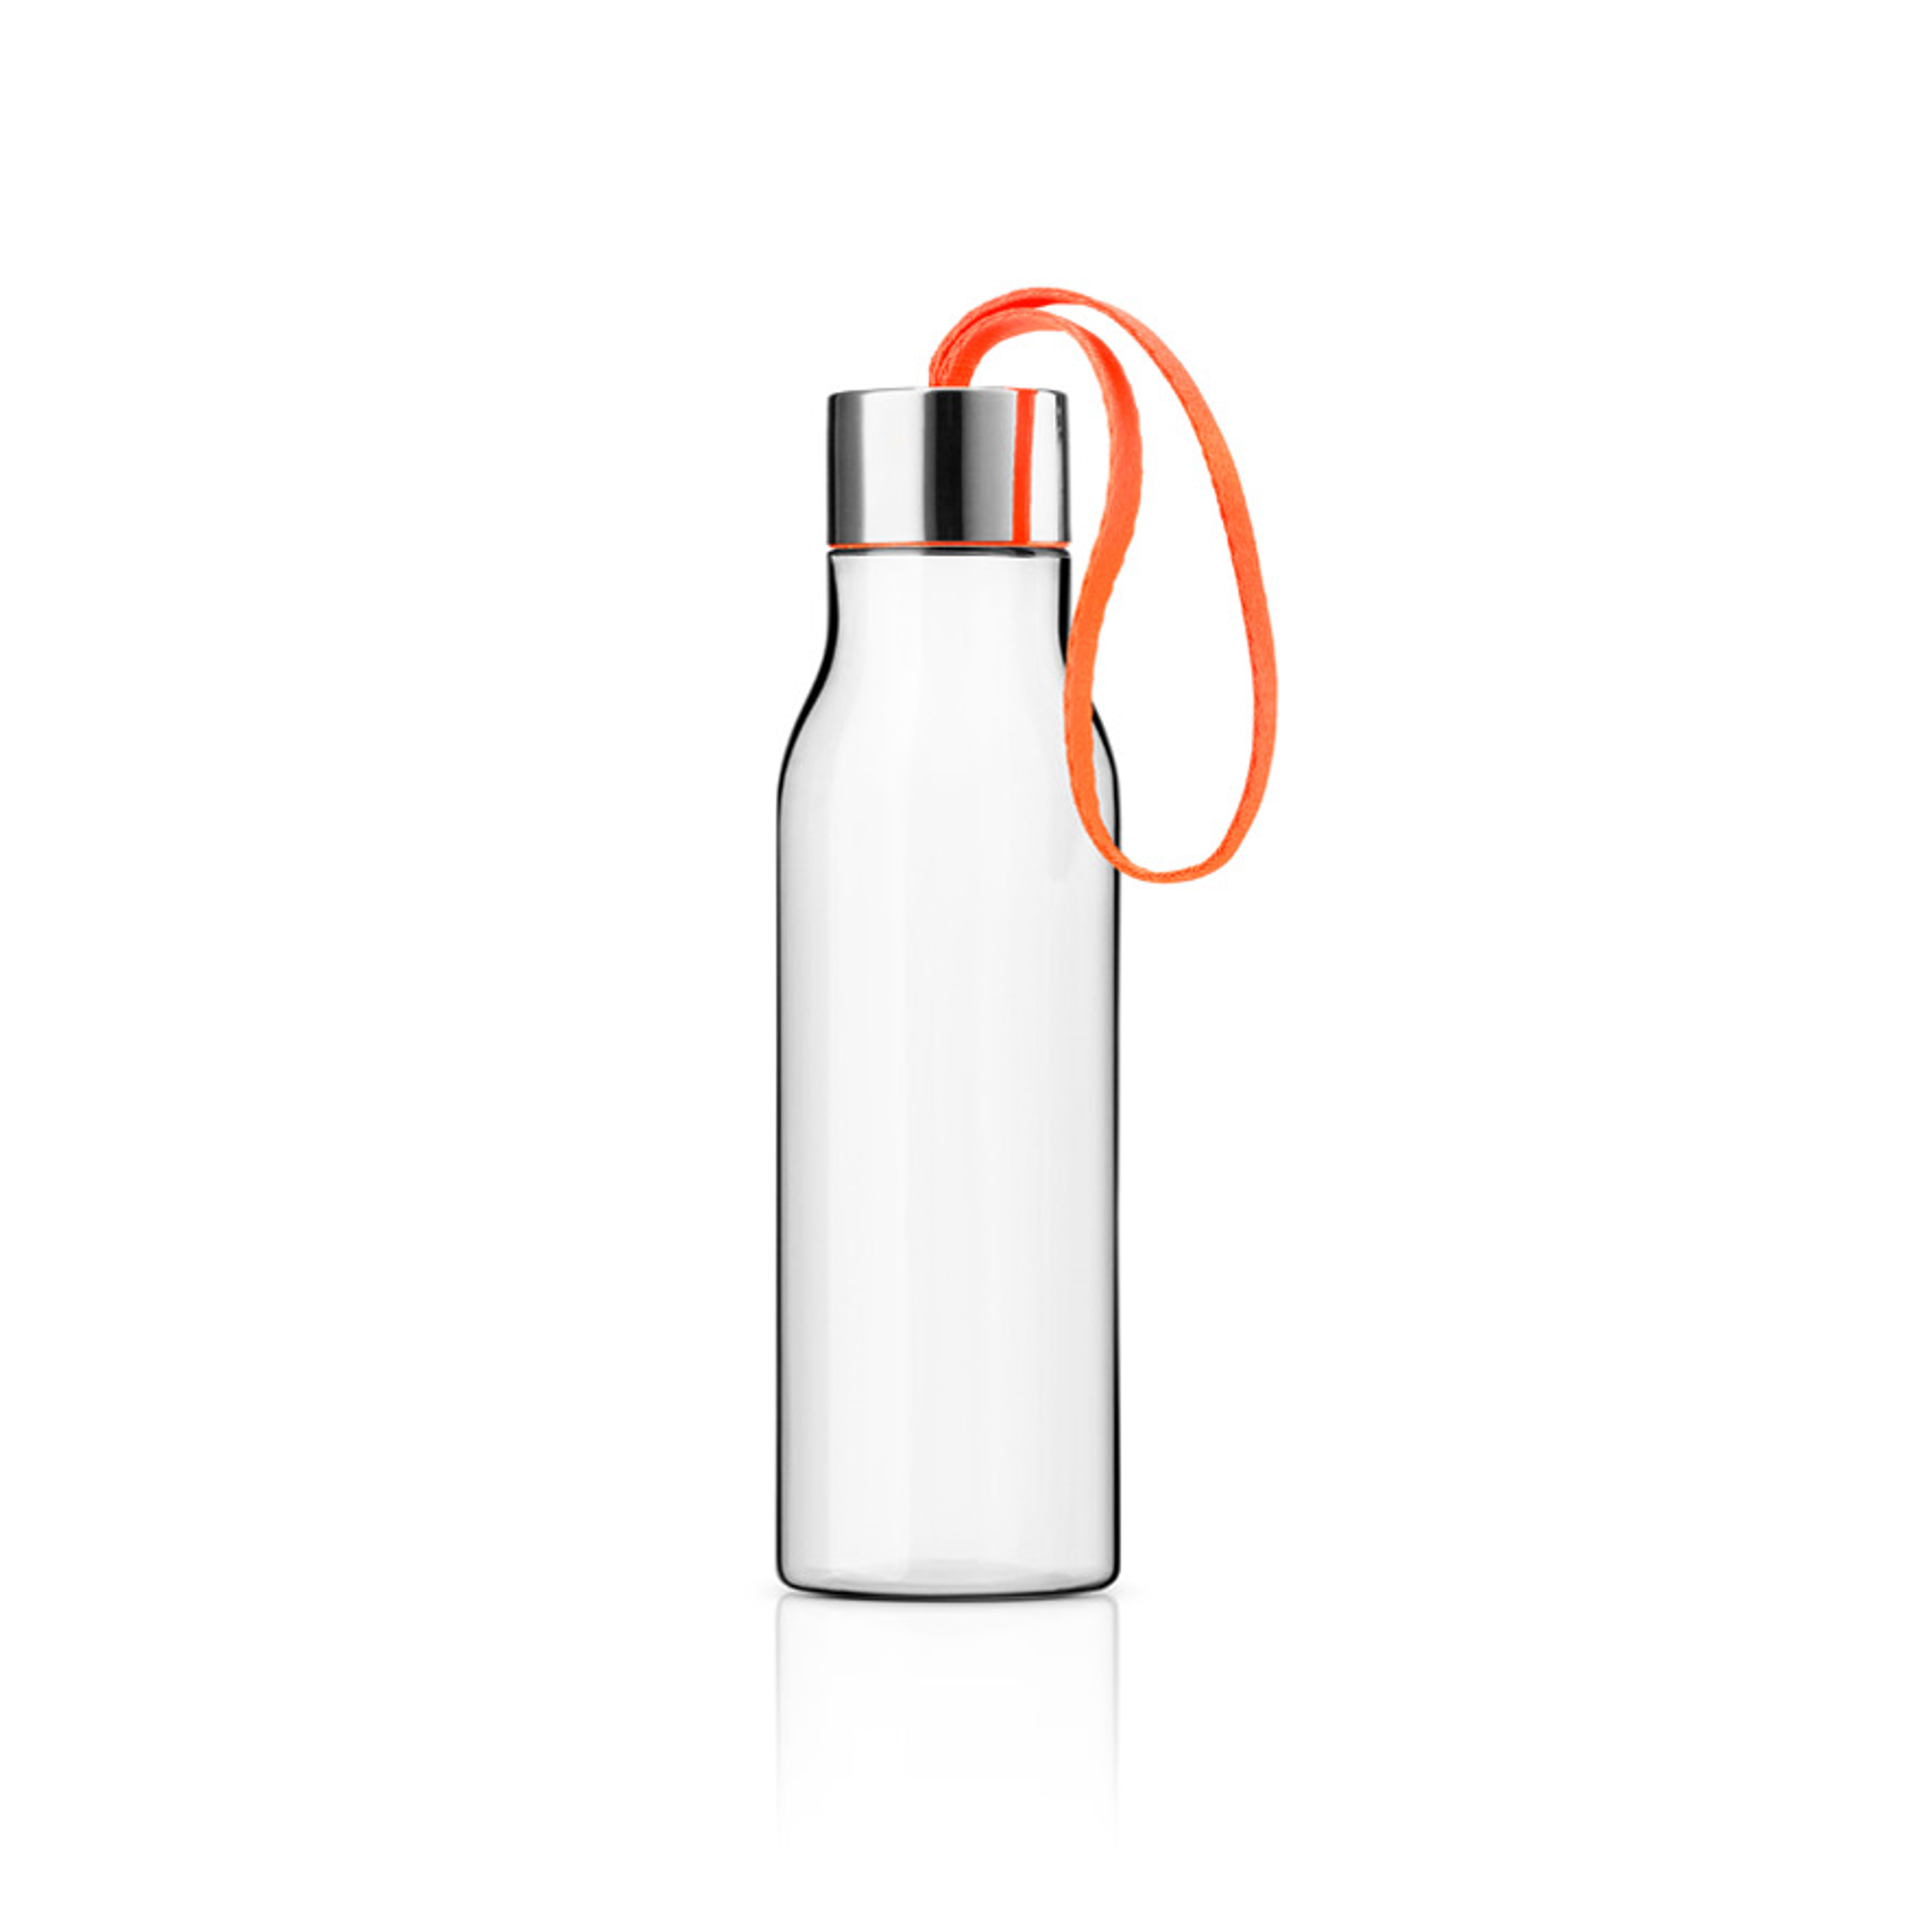 Drinking bottle - 0.5 liters - Juicy orange